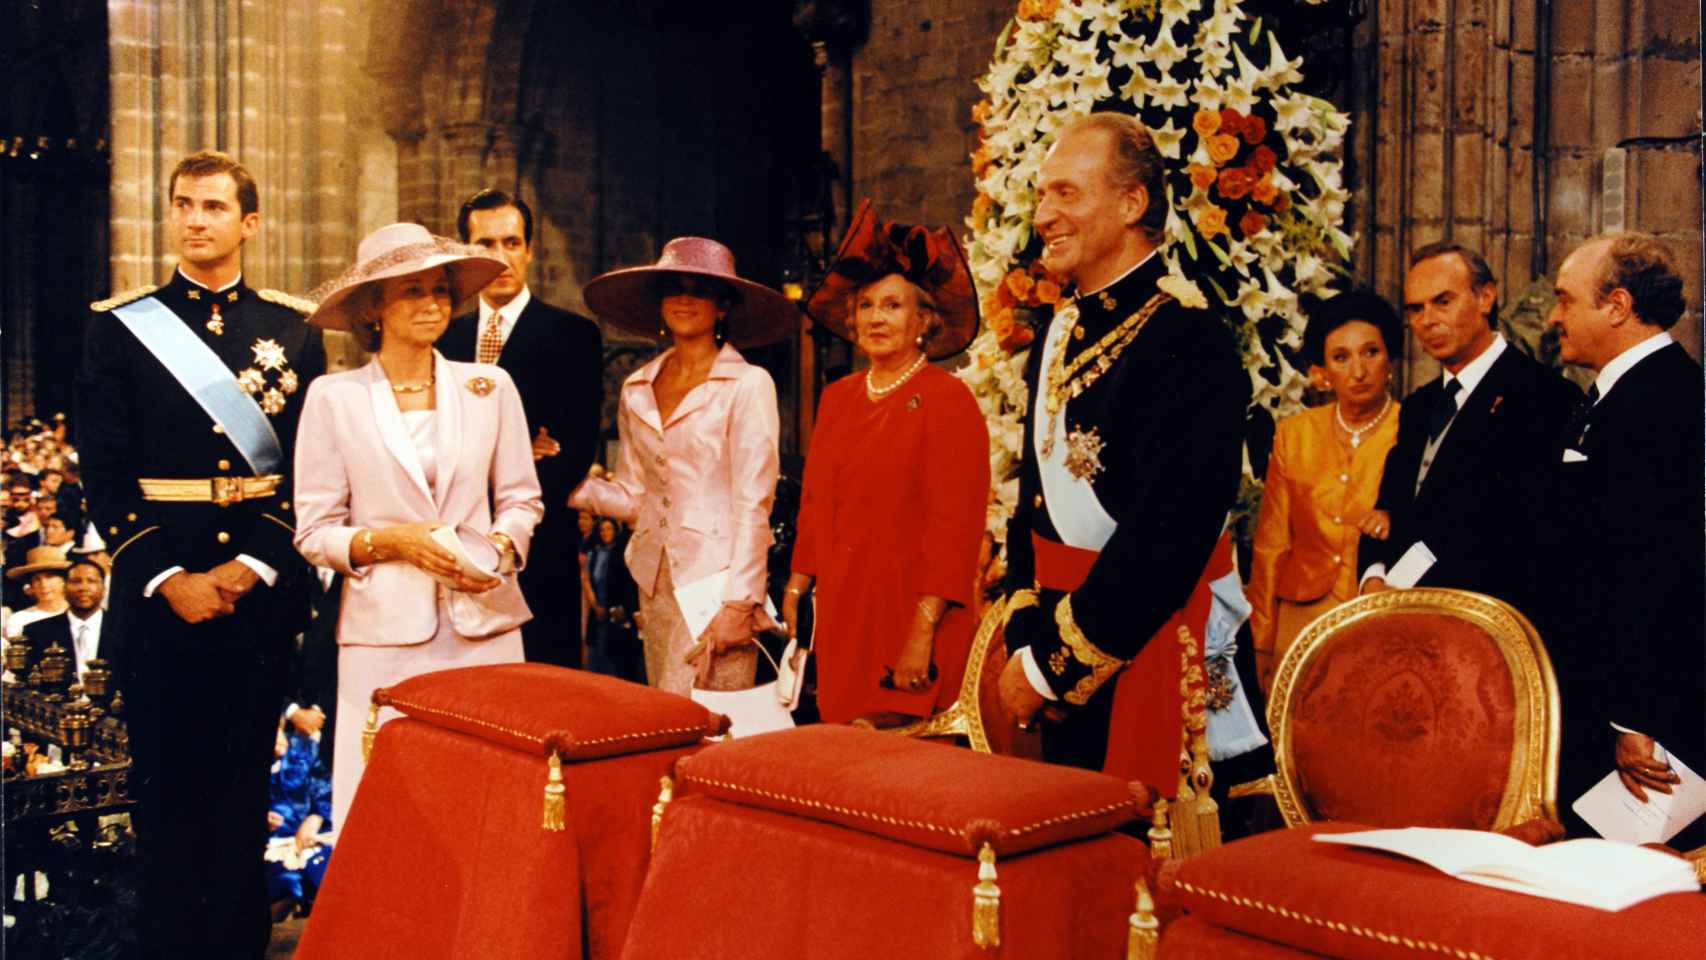 La Infanta Pilar, de rojo, junto a su hermano, el Rey Juan Carlos y otros miembros de la Casa Real en 1997.